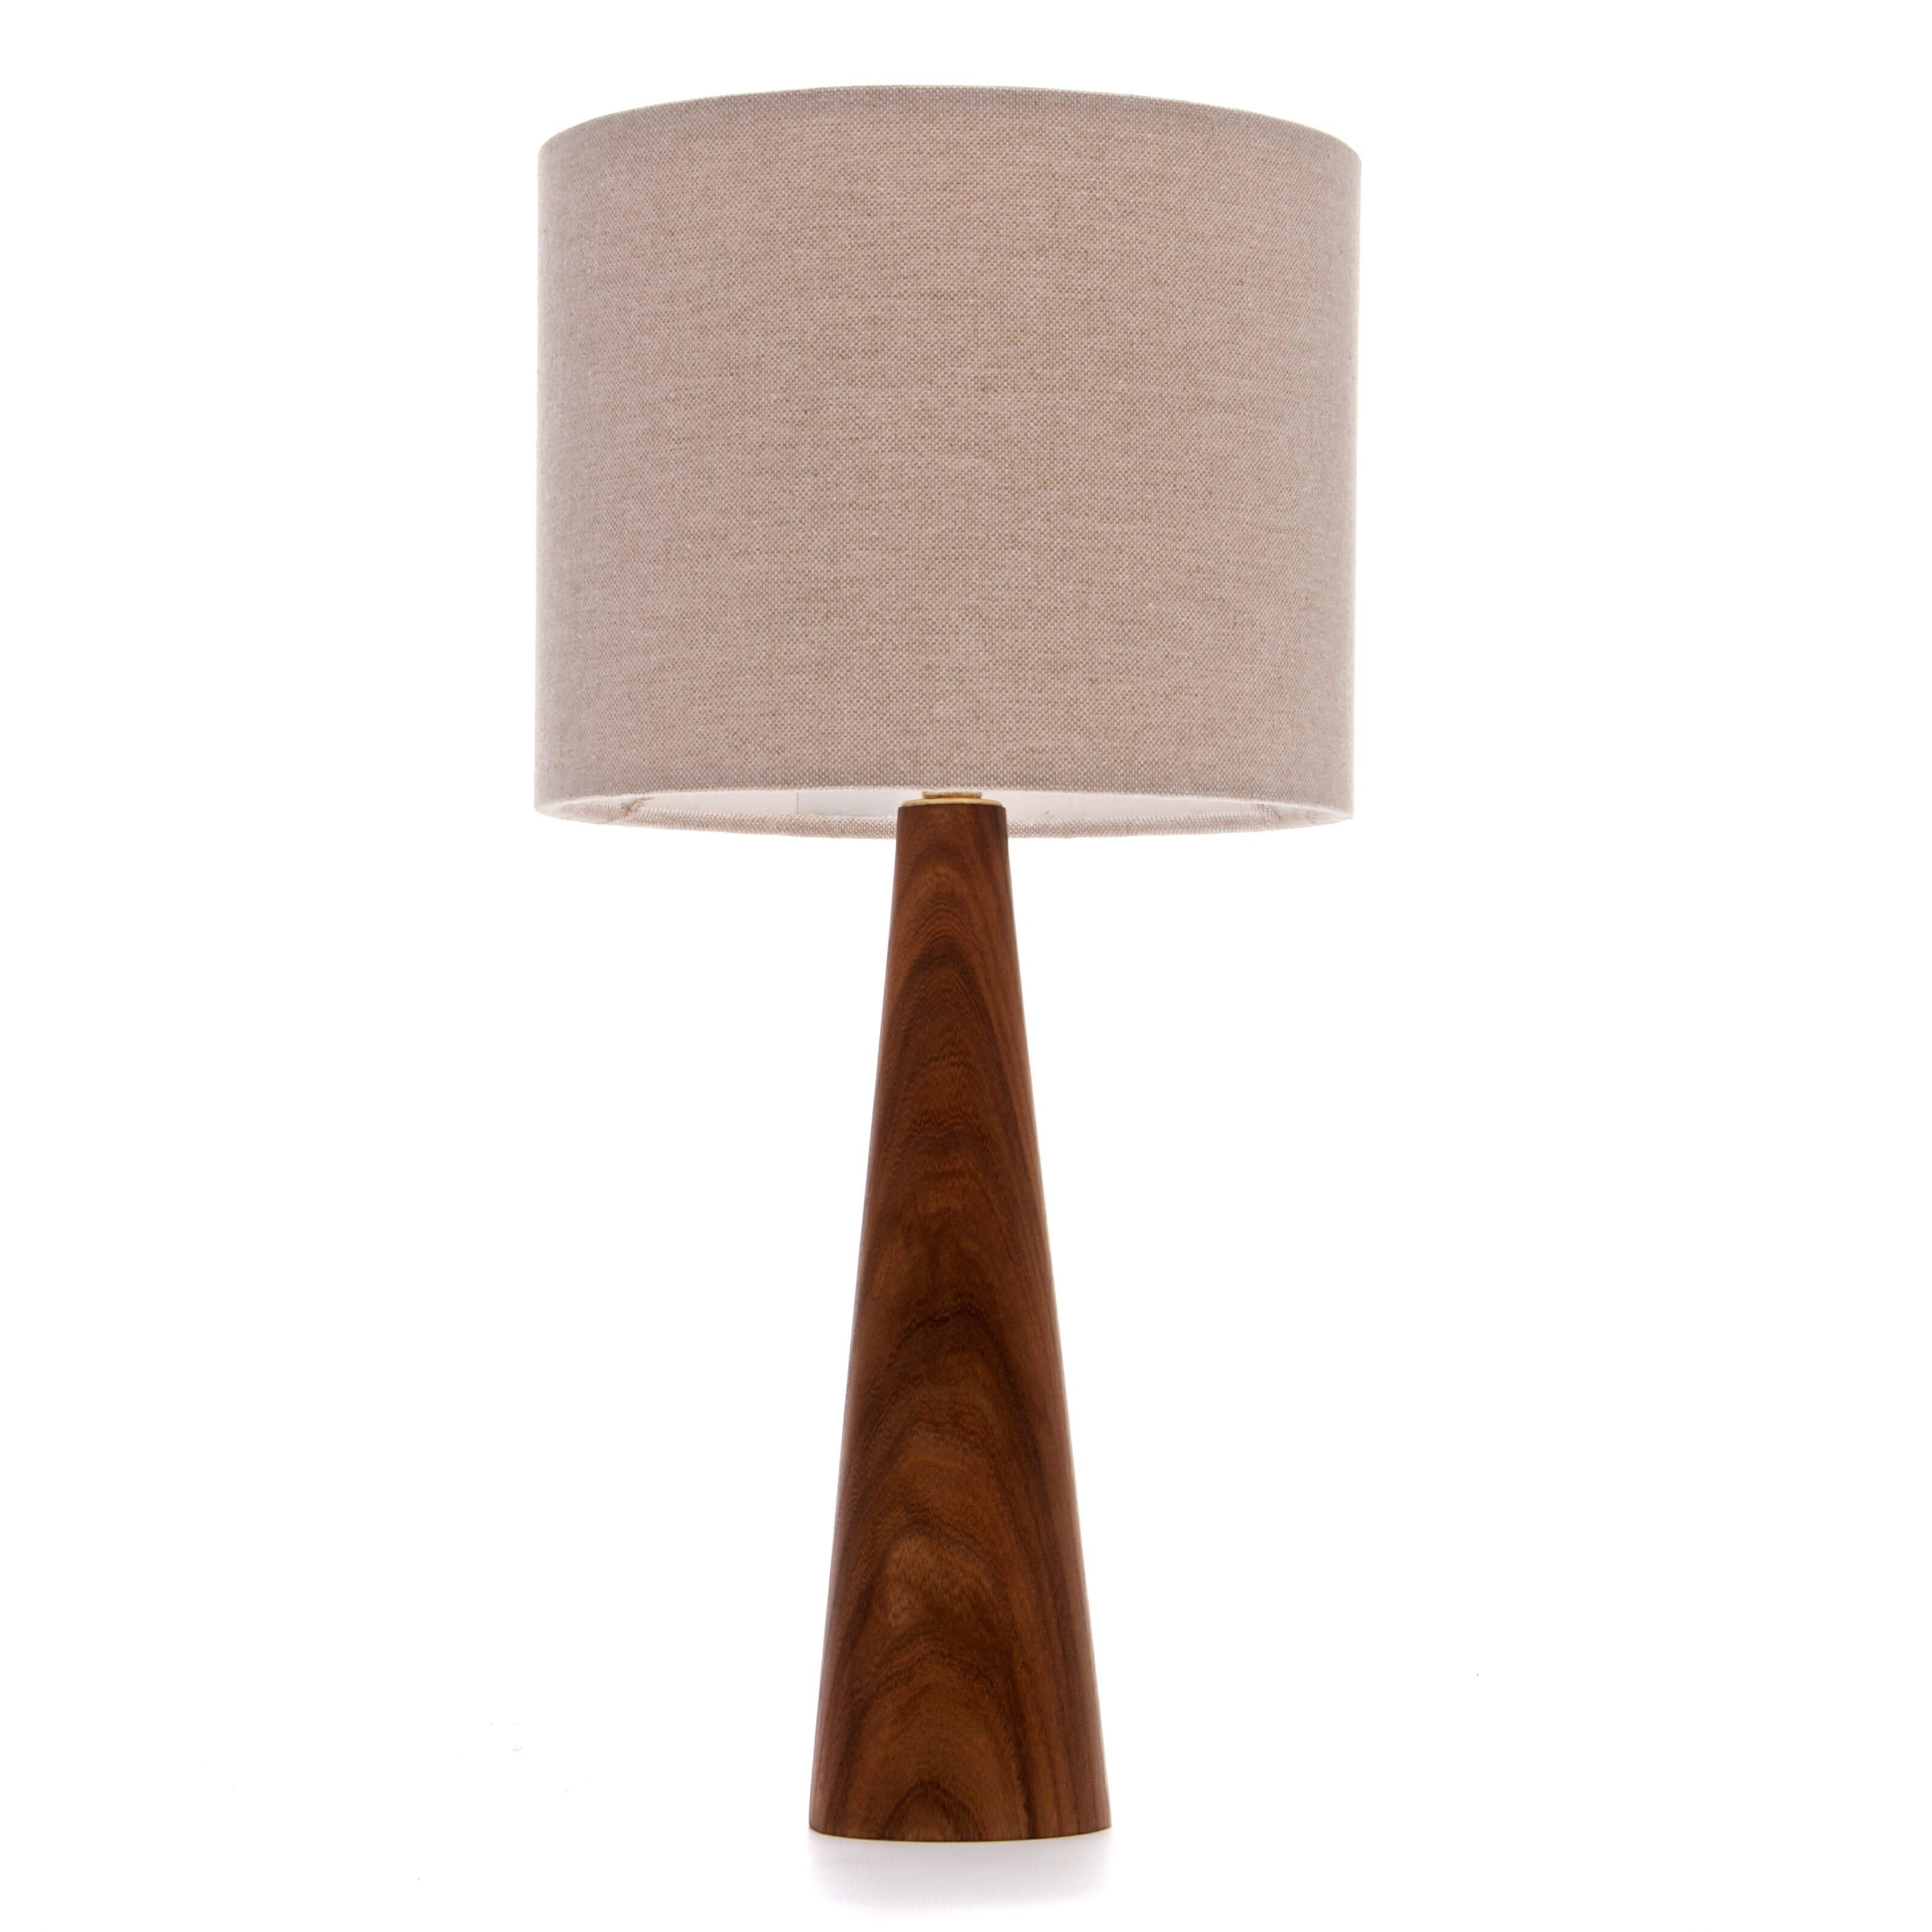 Elm bedside lamp | Wooden bedside lamp. Handmade in the UK